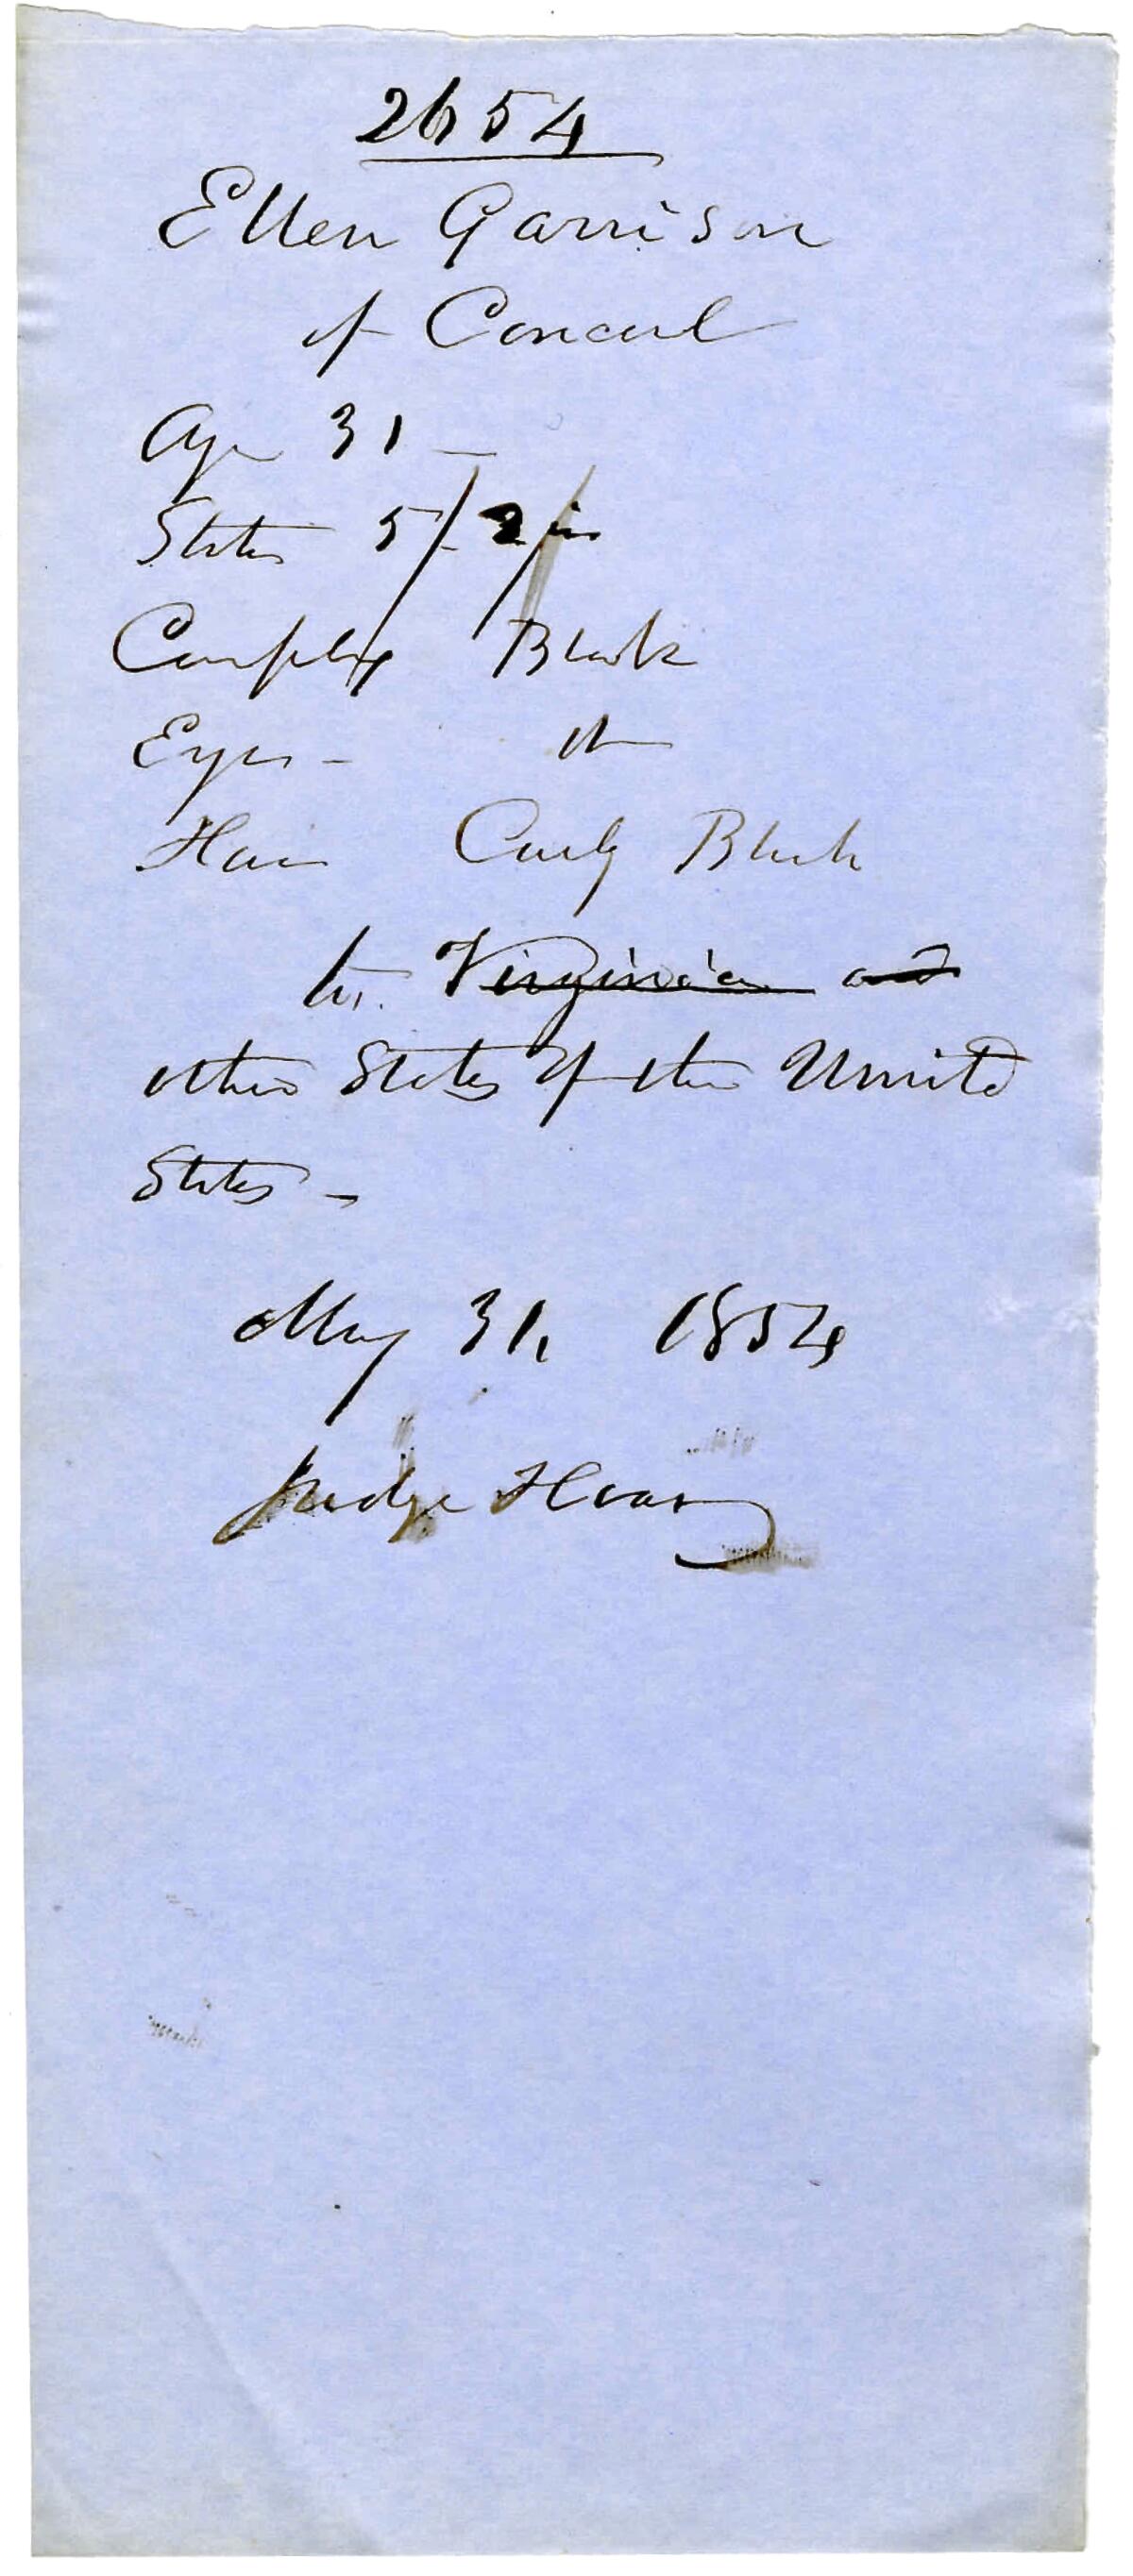 The paper passport that was issued to Ellen Garrison Clark in 1854